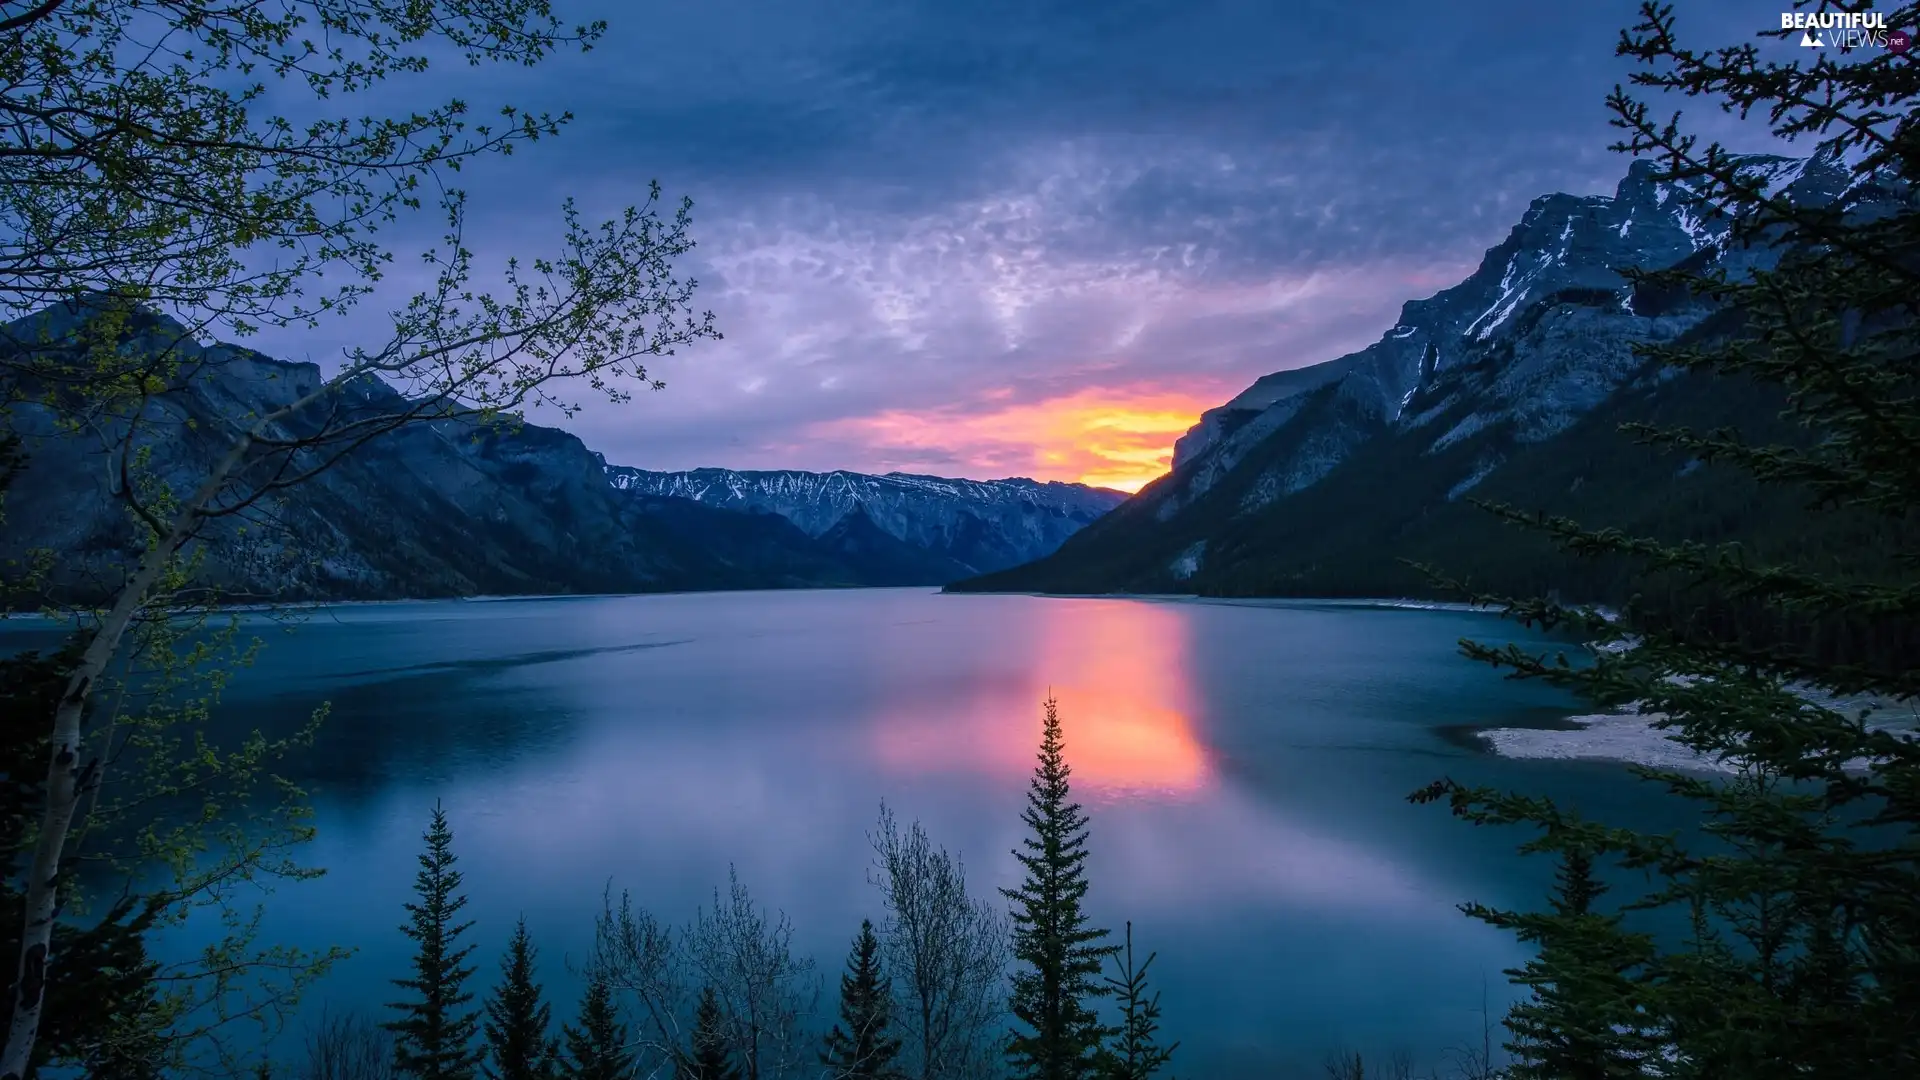 Mountains, Sunrise, Province of Alberta, Lake Minnewanka, Canada